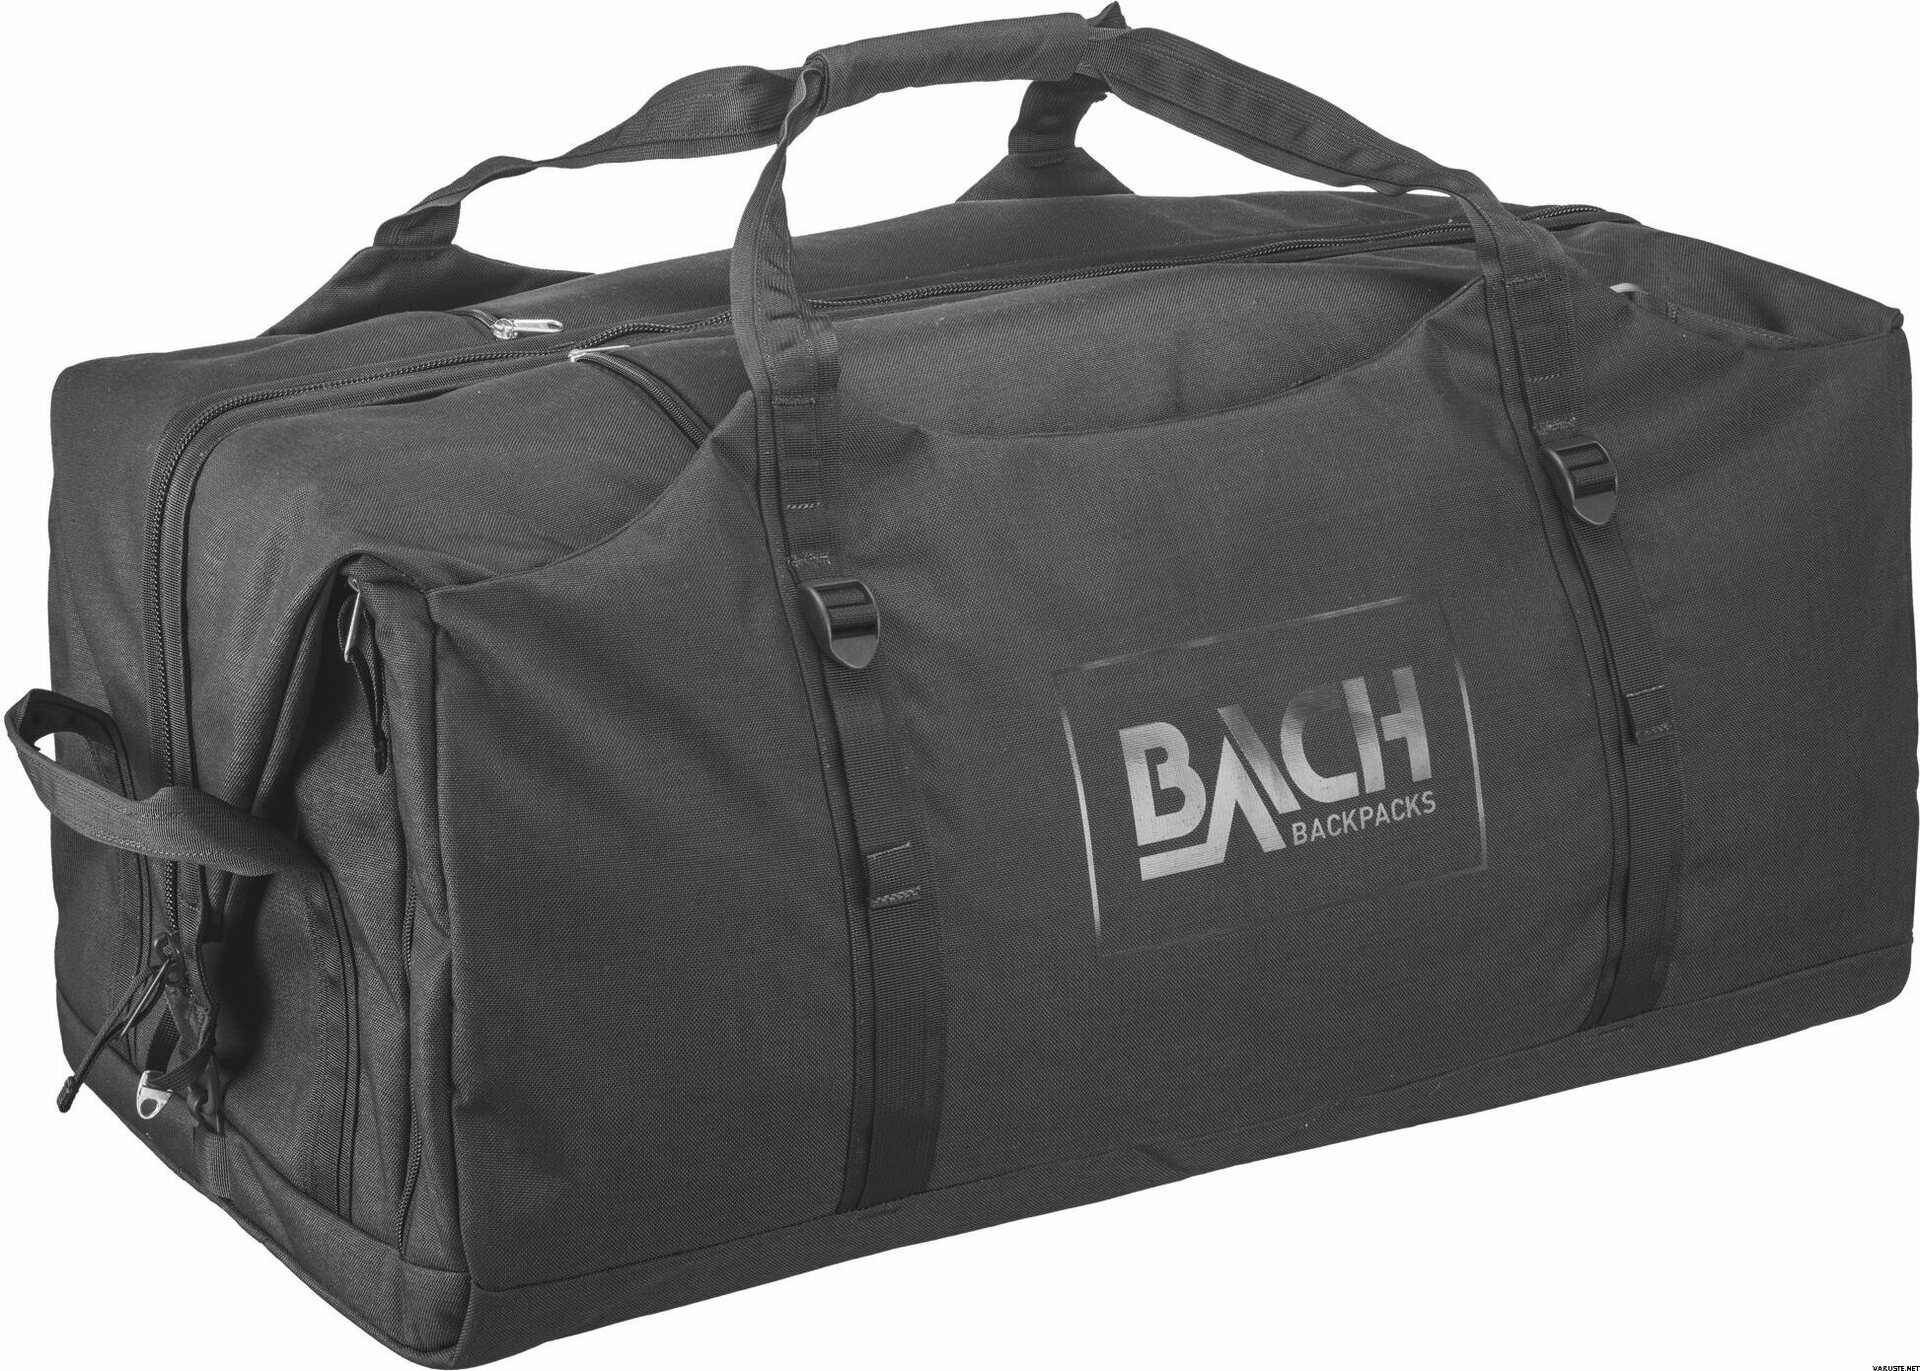 Bach Equipment Dr Duffel 110 | Duffle bags | Varuste.net English